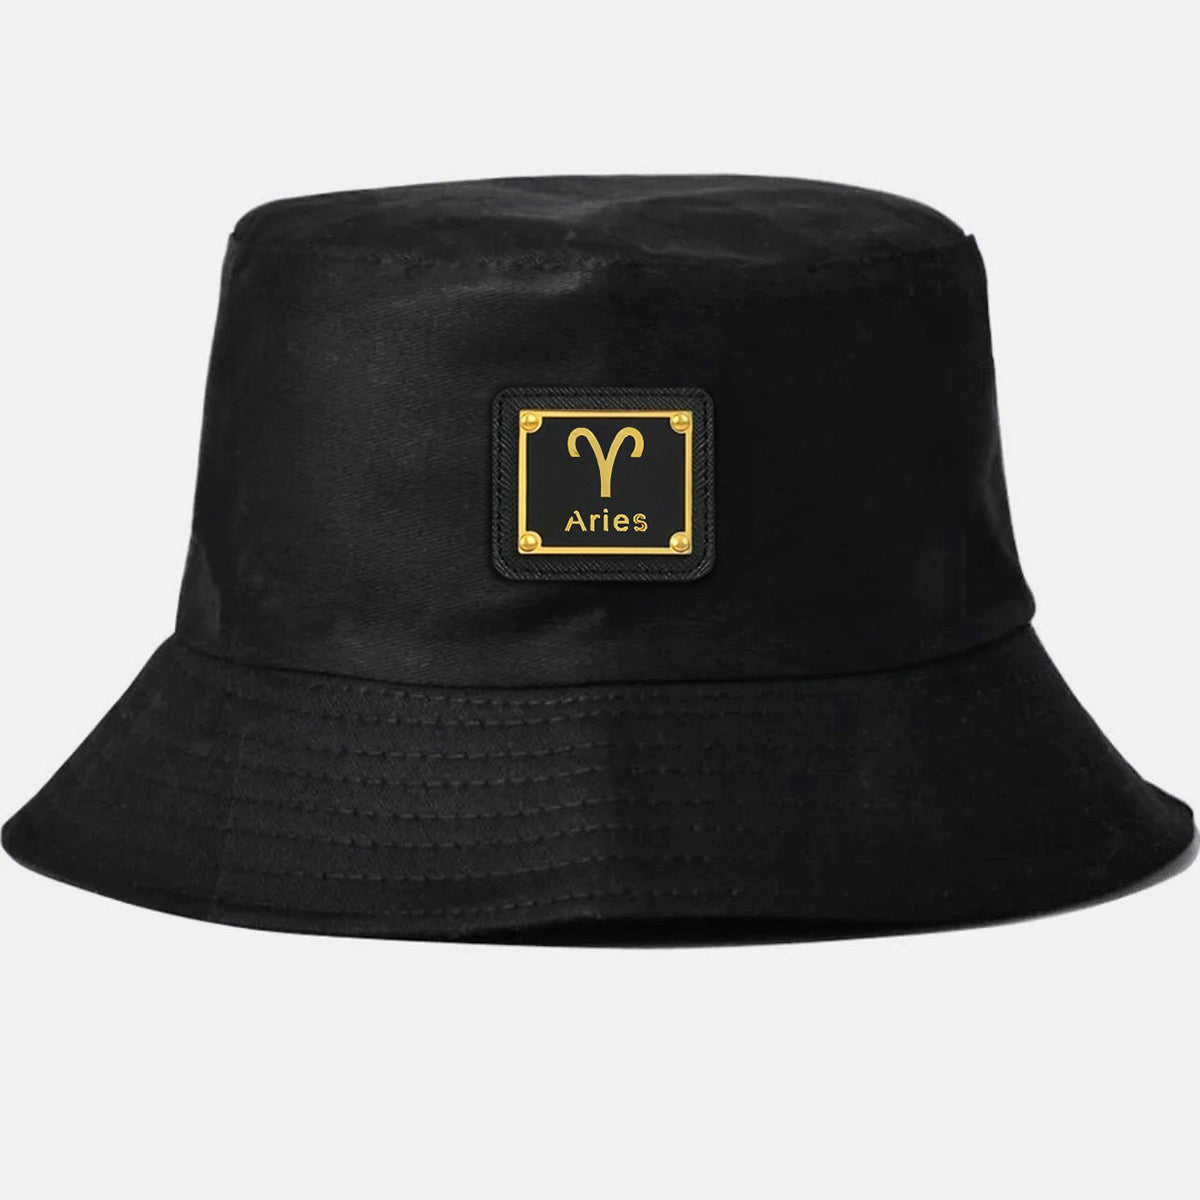 Aries bucket hat